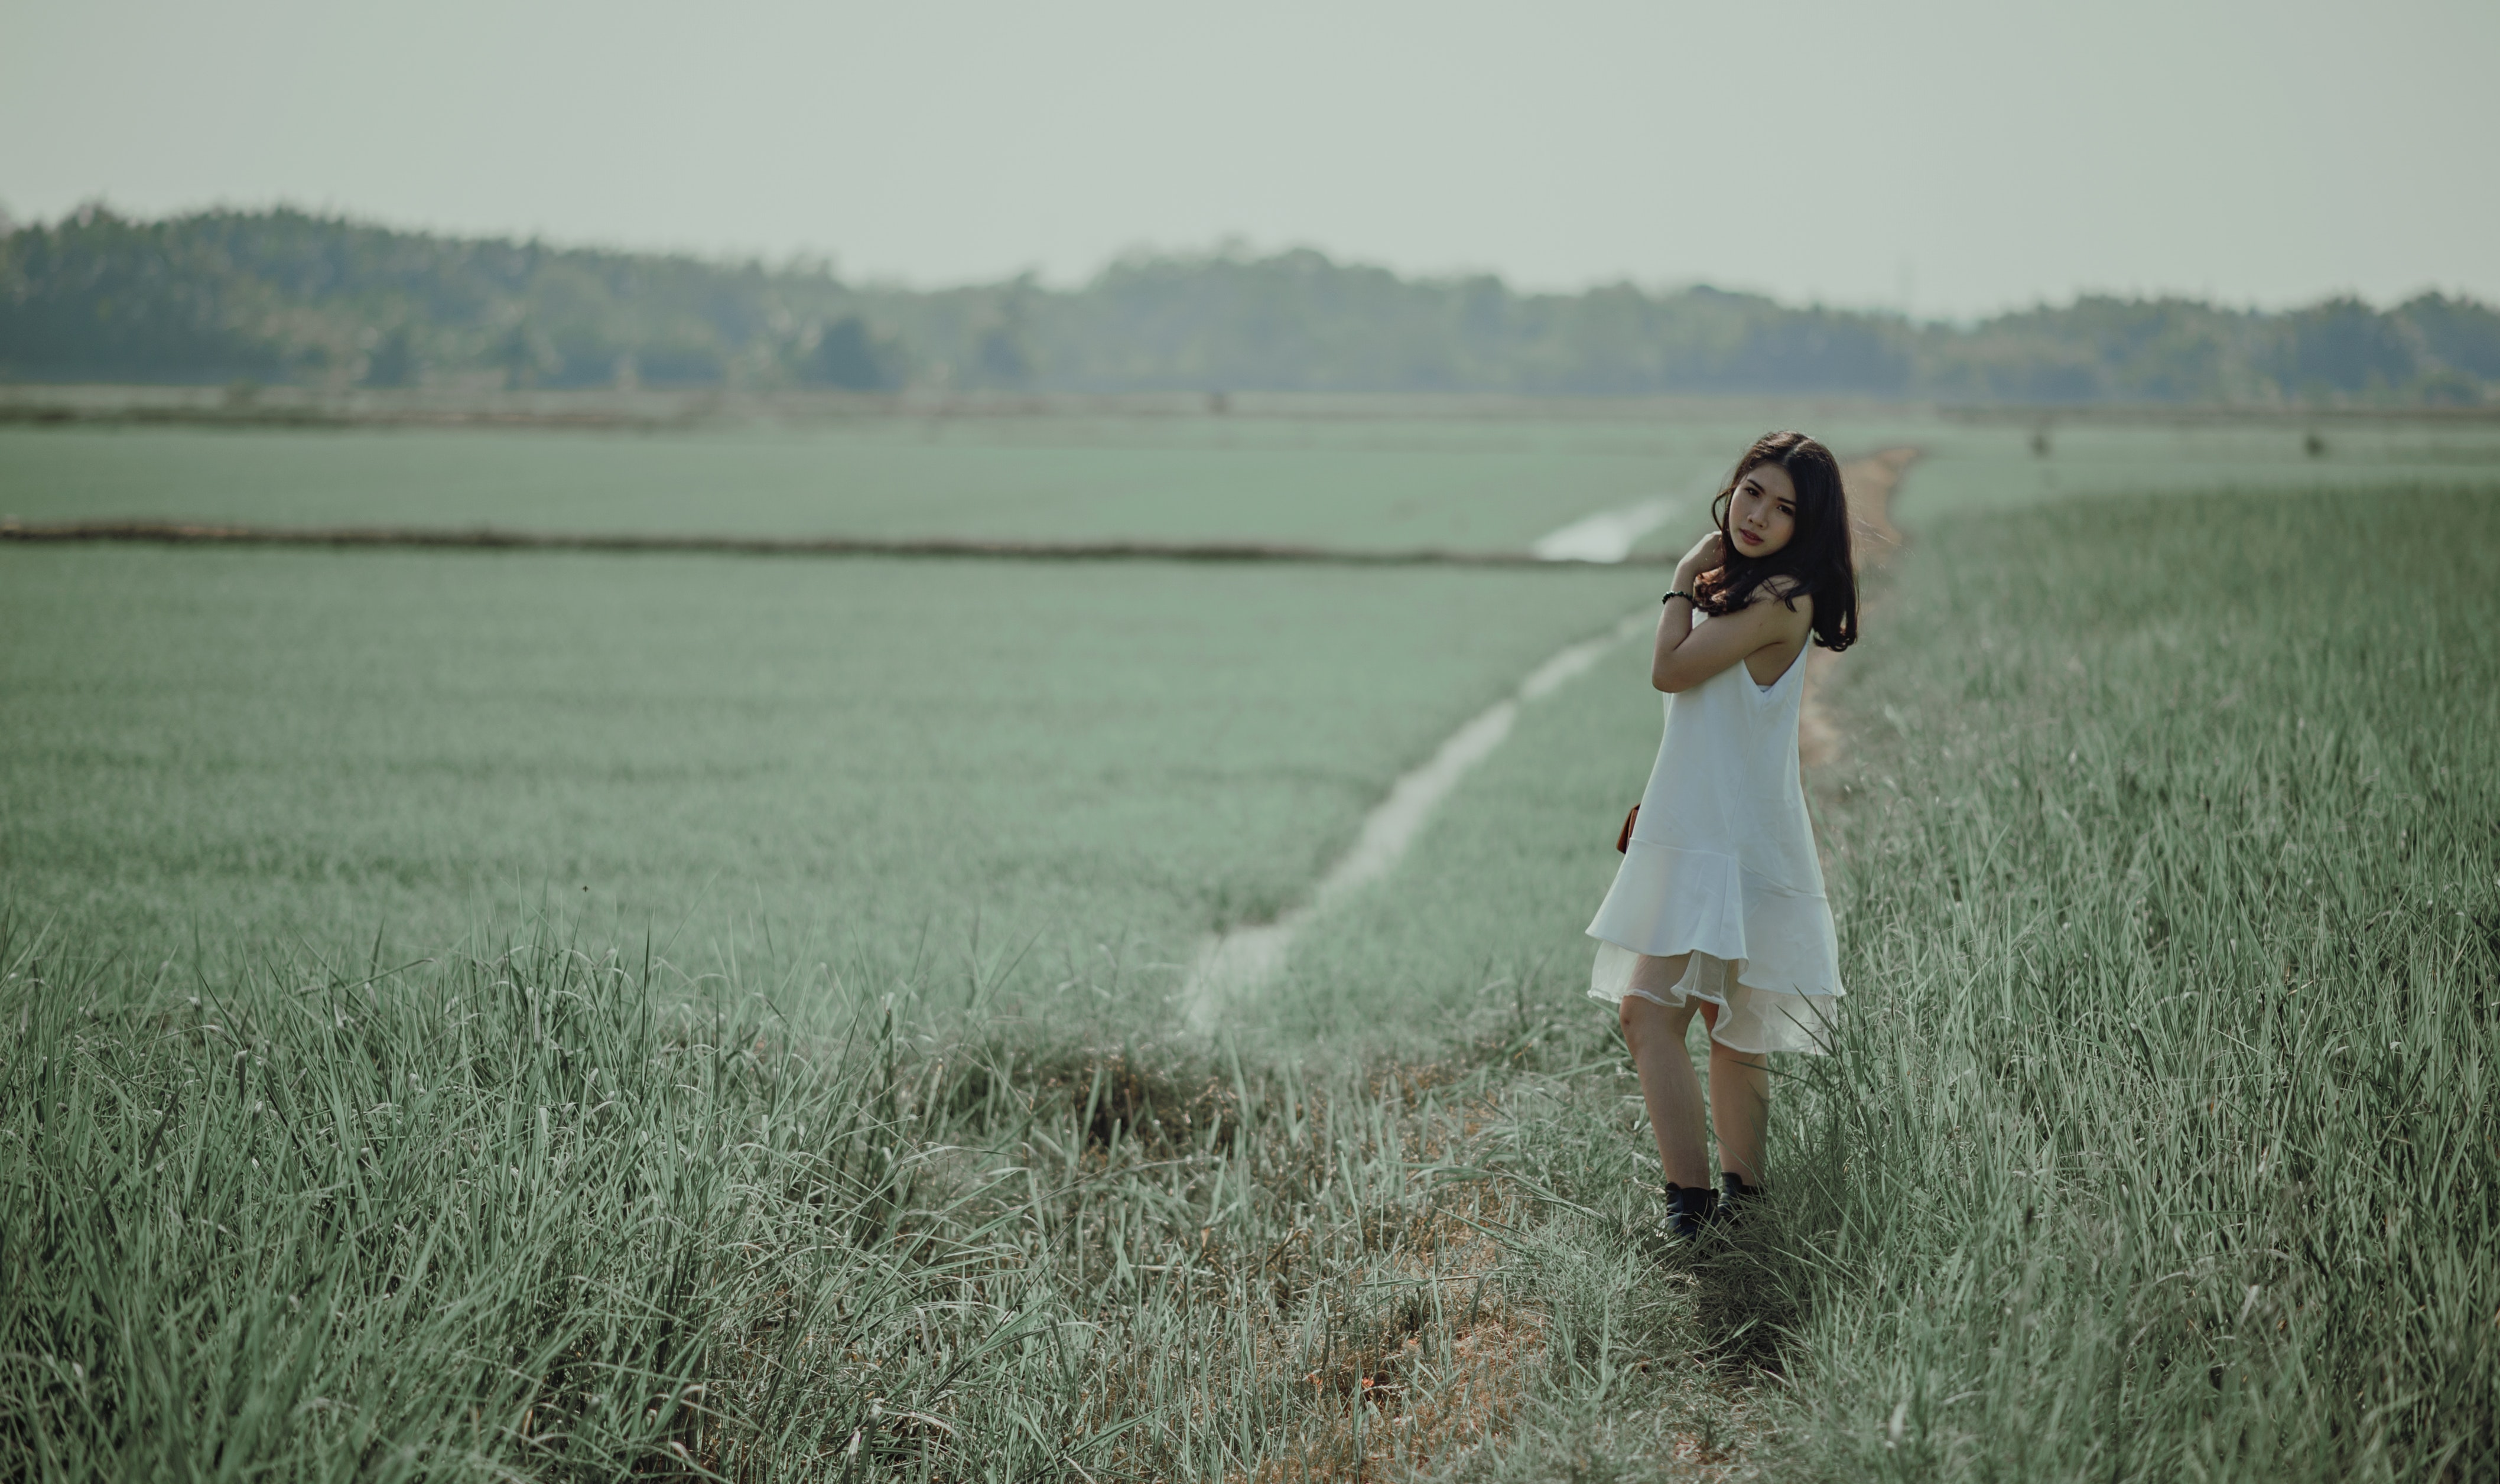 Away p. Фотосет трава поле. Женщина в траве. Девочка на поле в платье фото реальное.